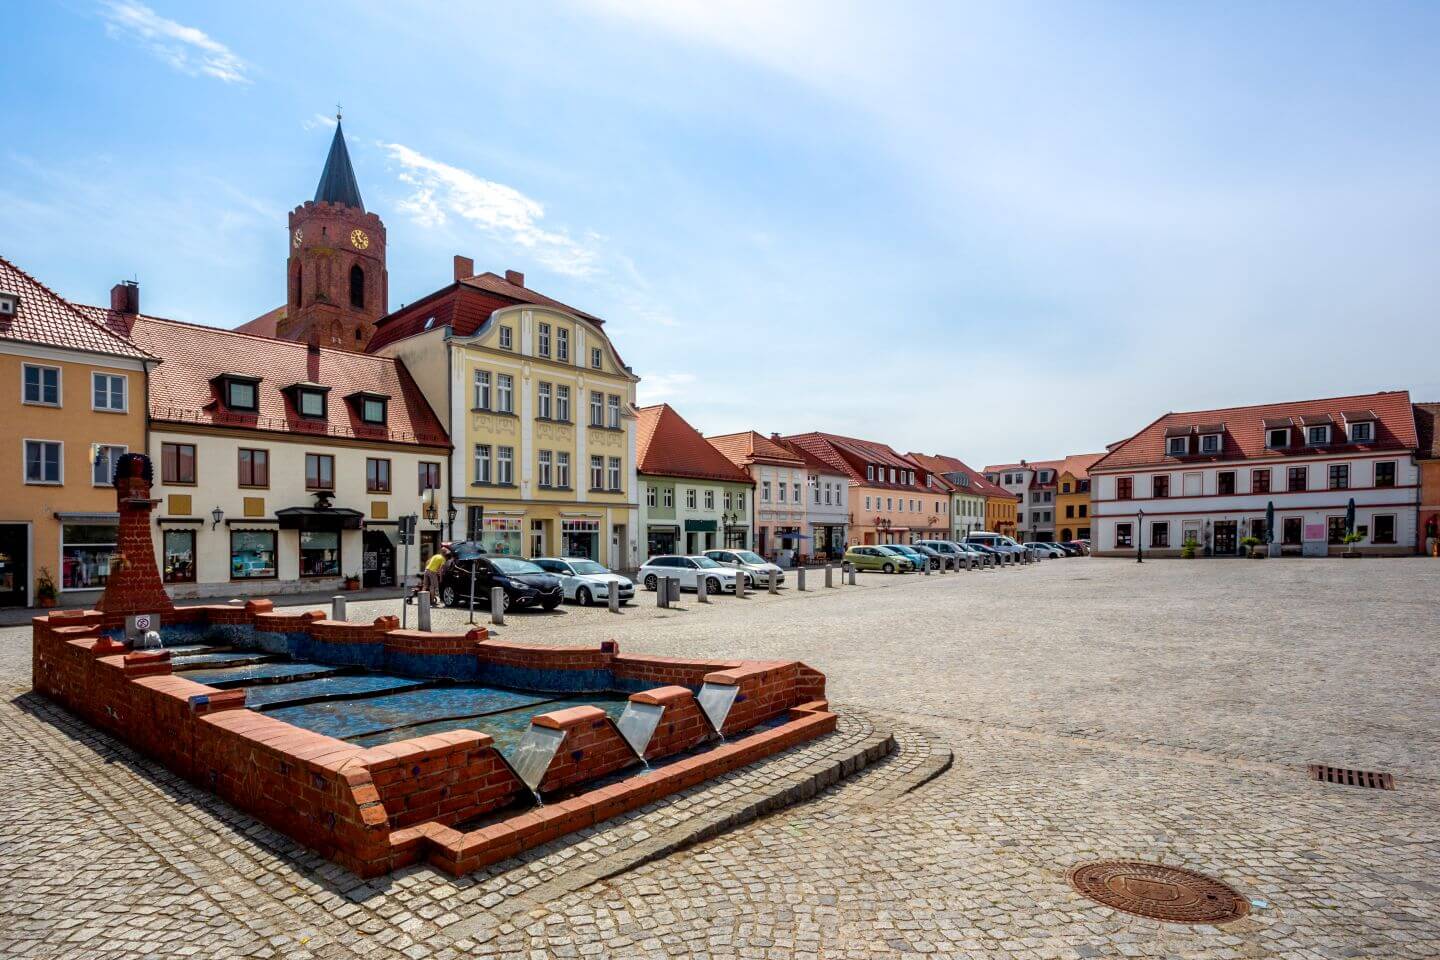 Marktplatz mit Brunnen in Beeskow